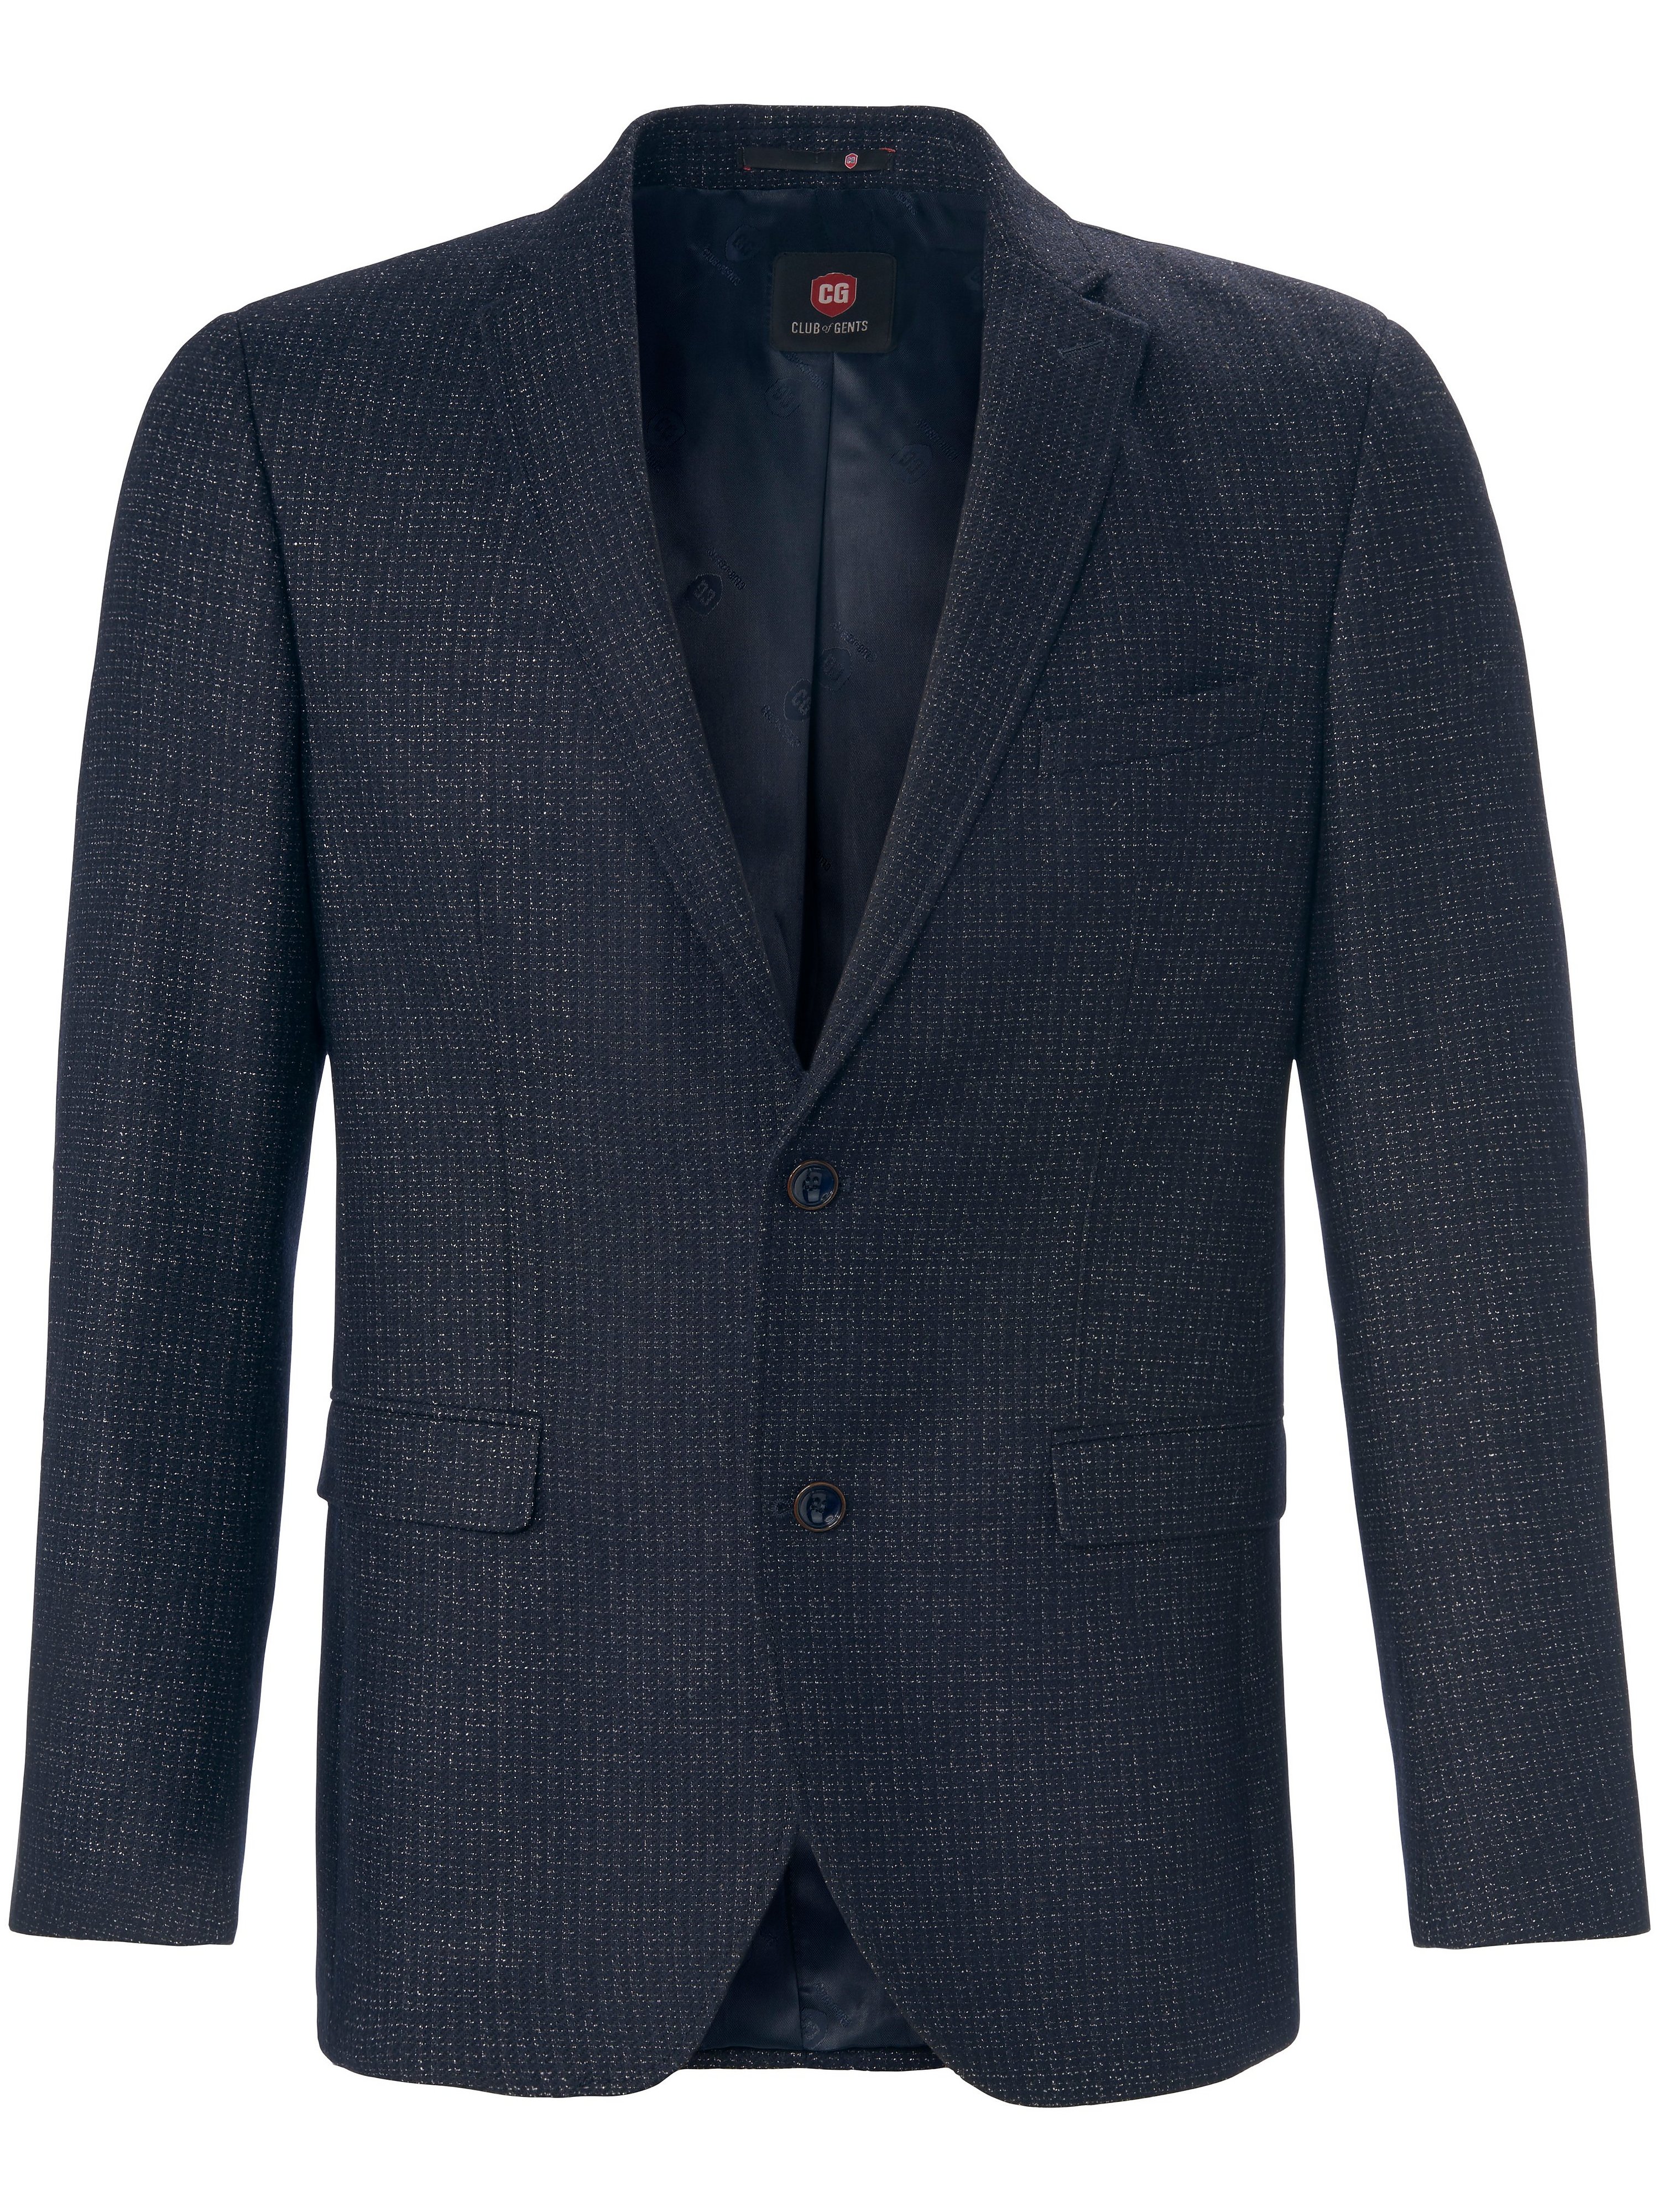 La veste ajustée en drap haut gamme  CG bleu